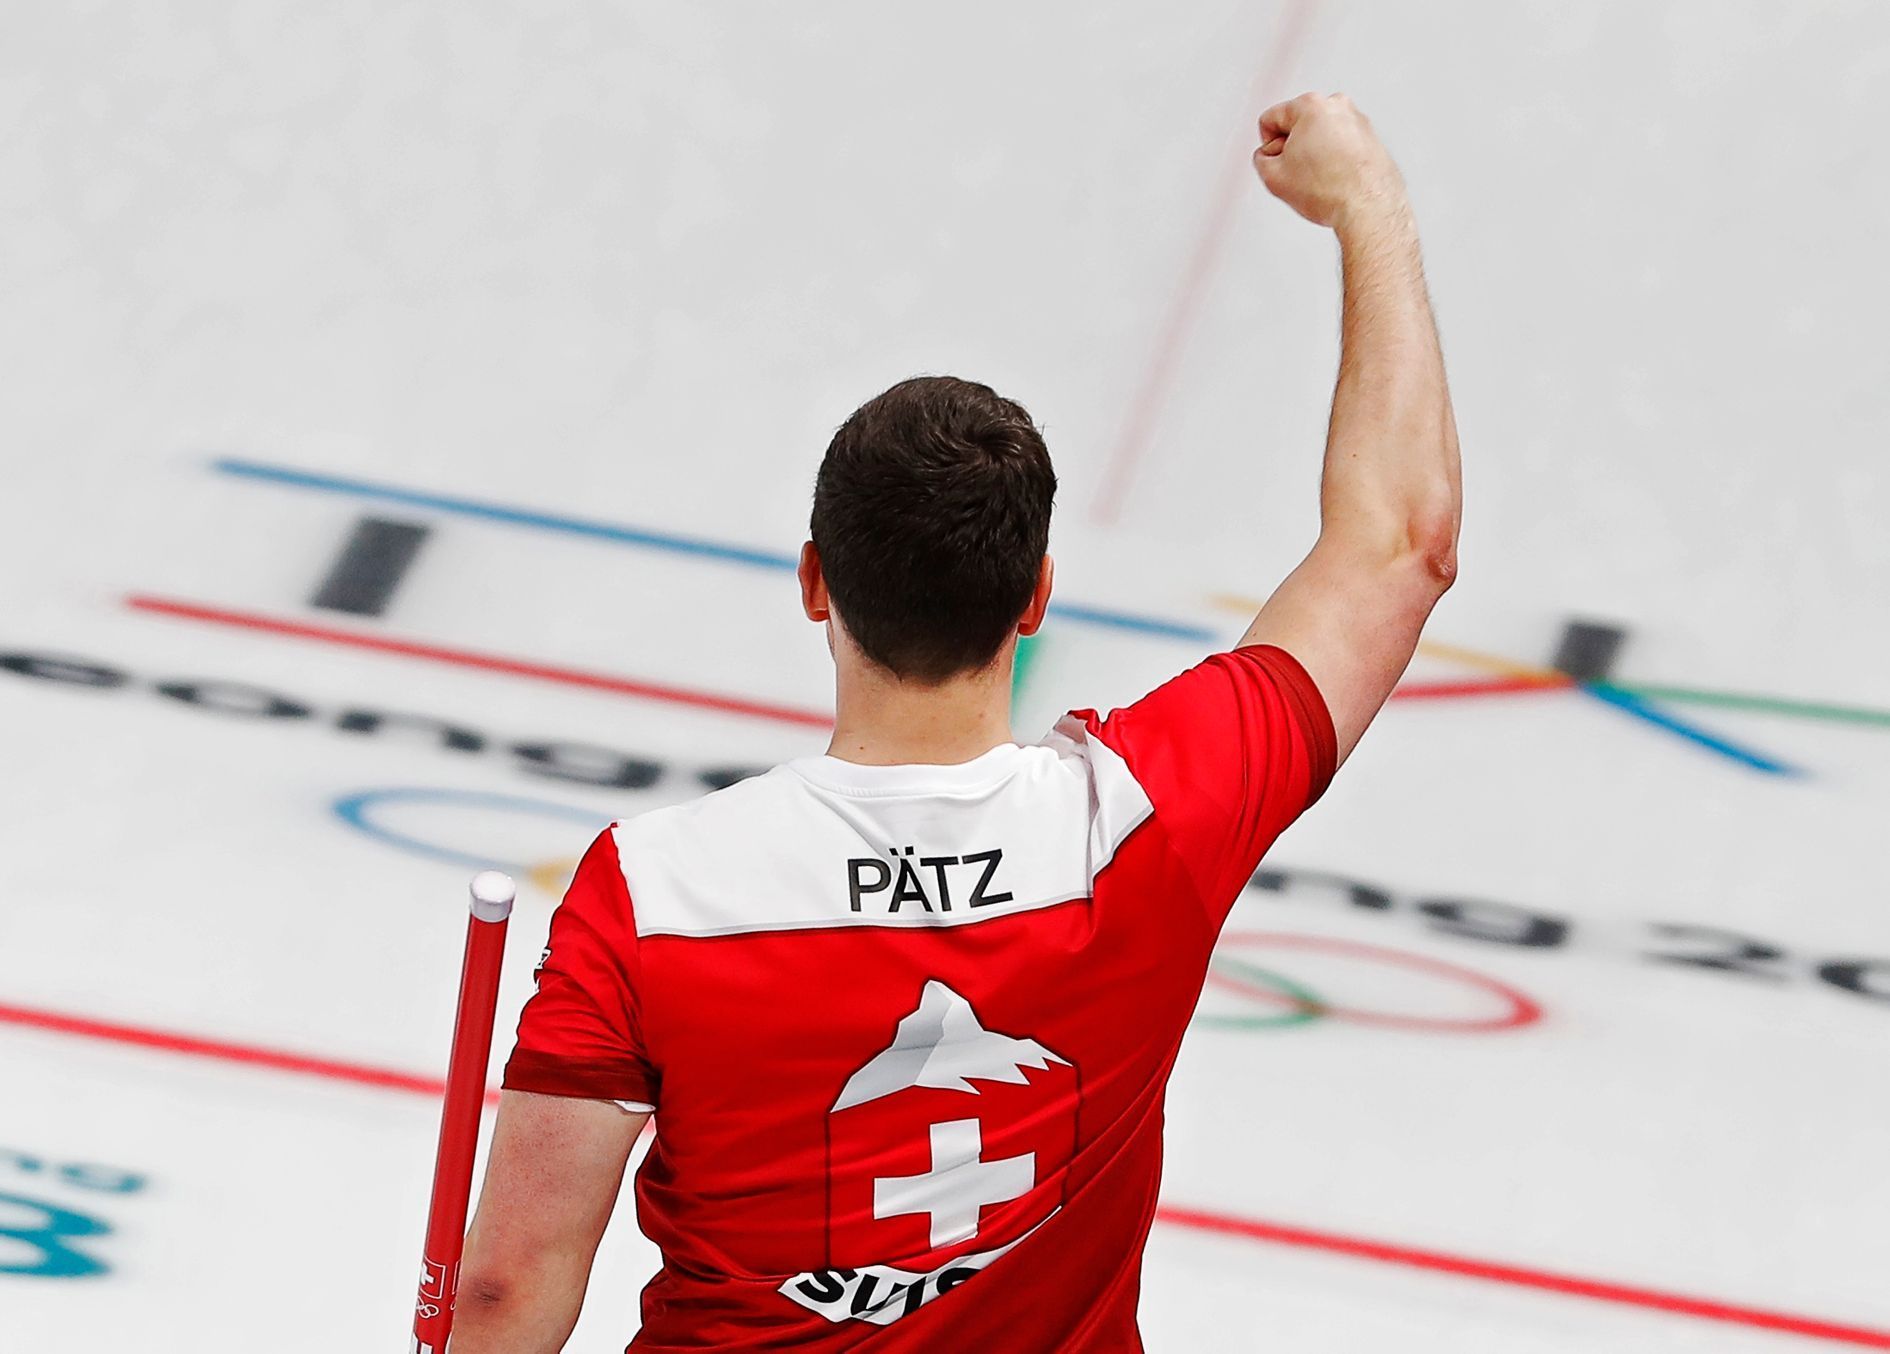 Švýcarský curler Claudio Patz slaví postup do semifinále olympijského turnaje